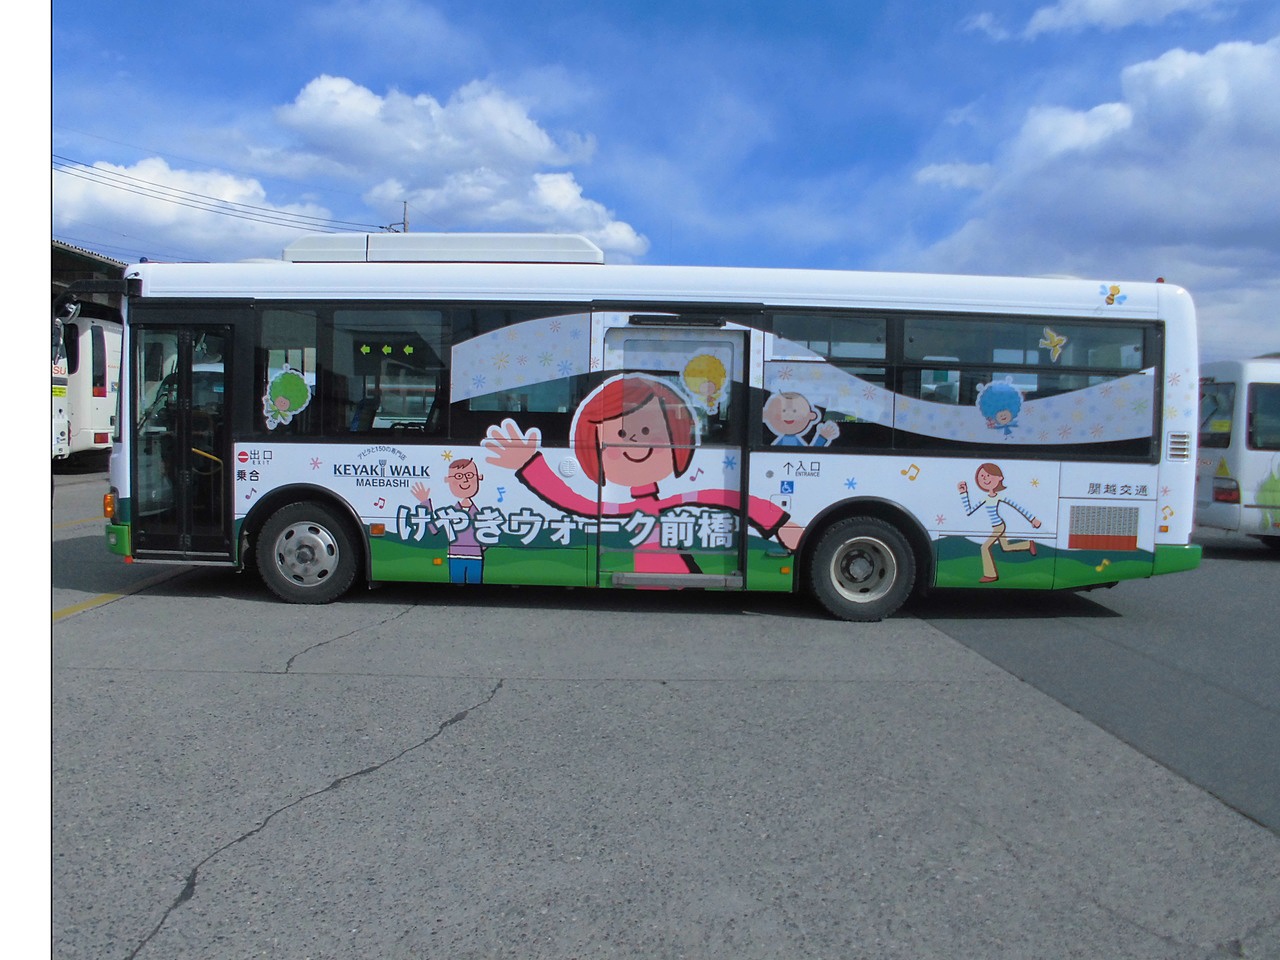 バス広告 ラッピングバス運行情報 関越交通株式会社 公式 群馬県の貸切 高速 乗合バス タクシー